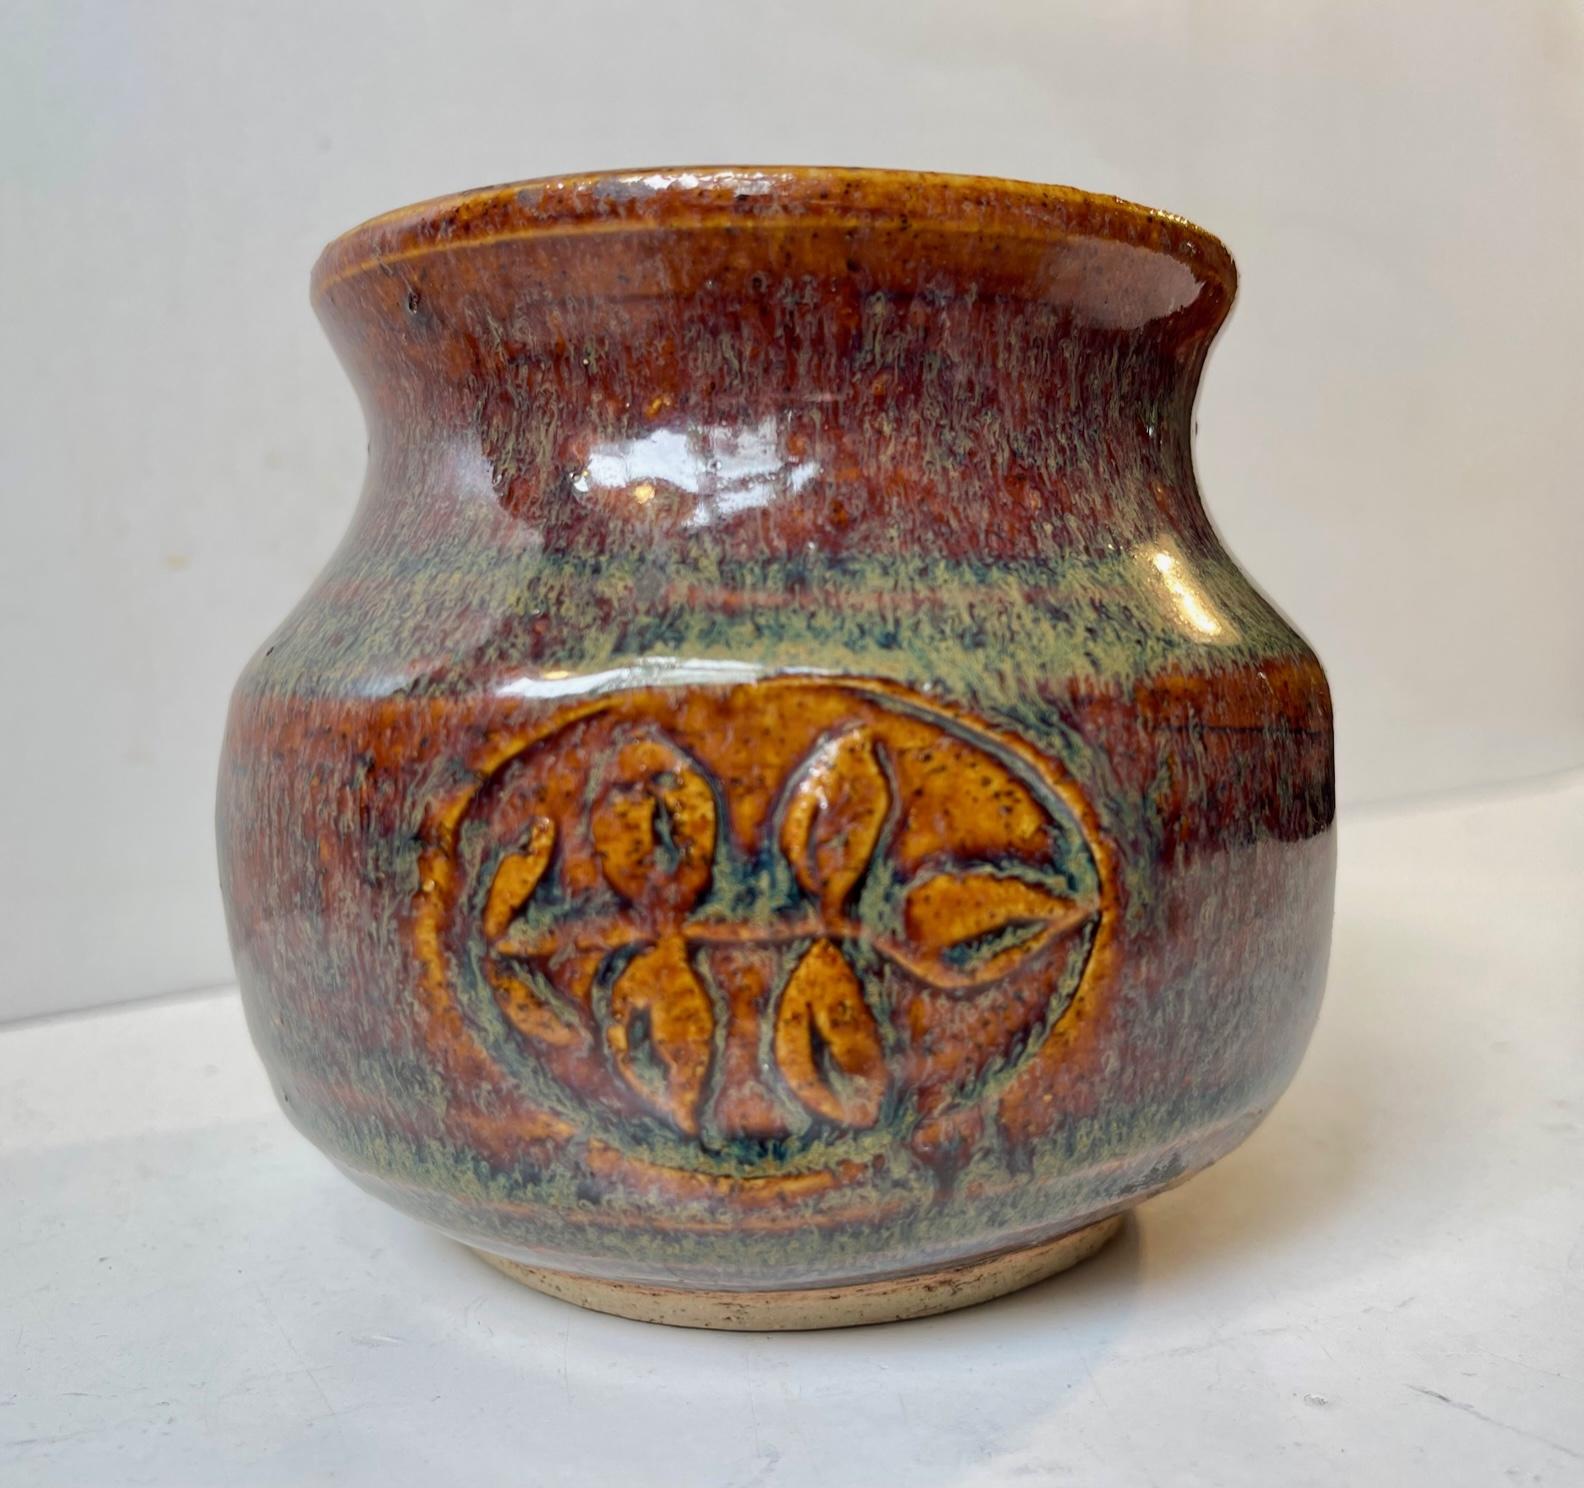 Danish Modern Glazed Stoneware Vase by Christian Ulrik Bertelsen, 1970s For Sale 1